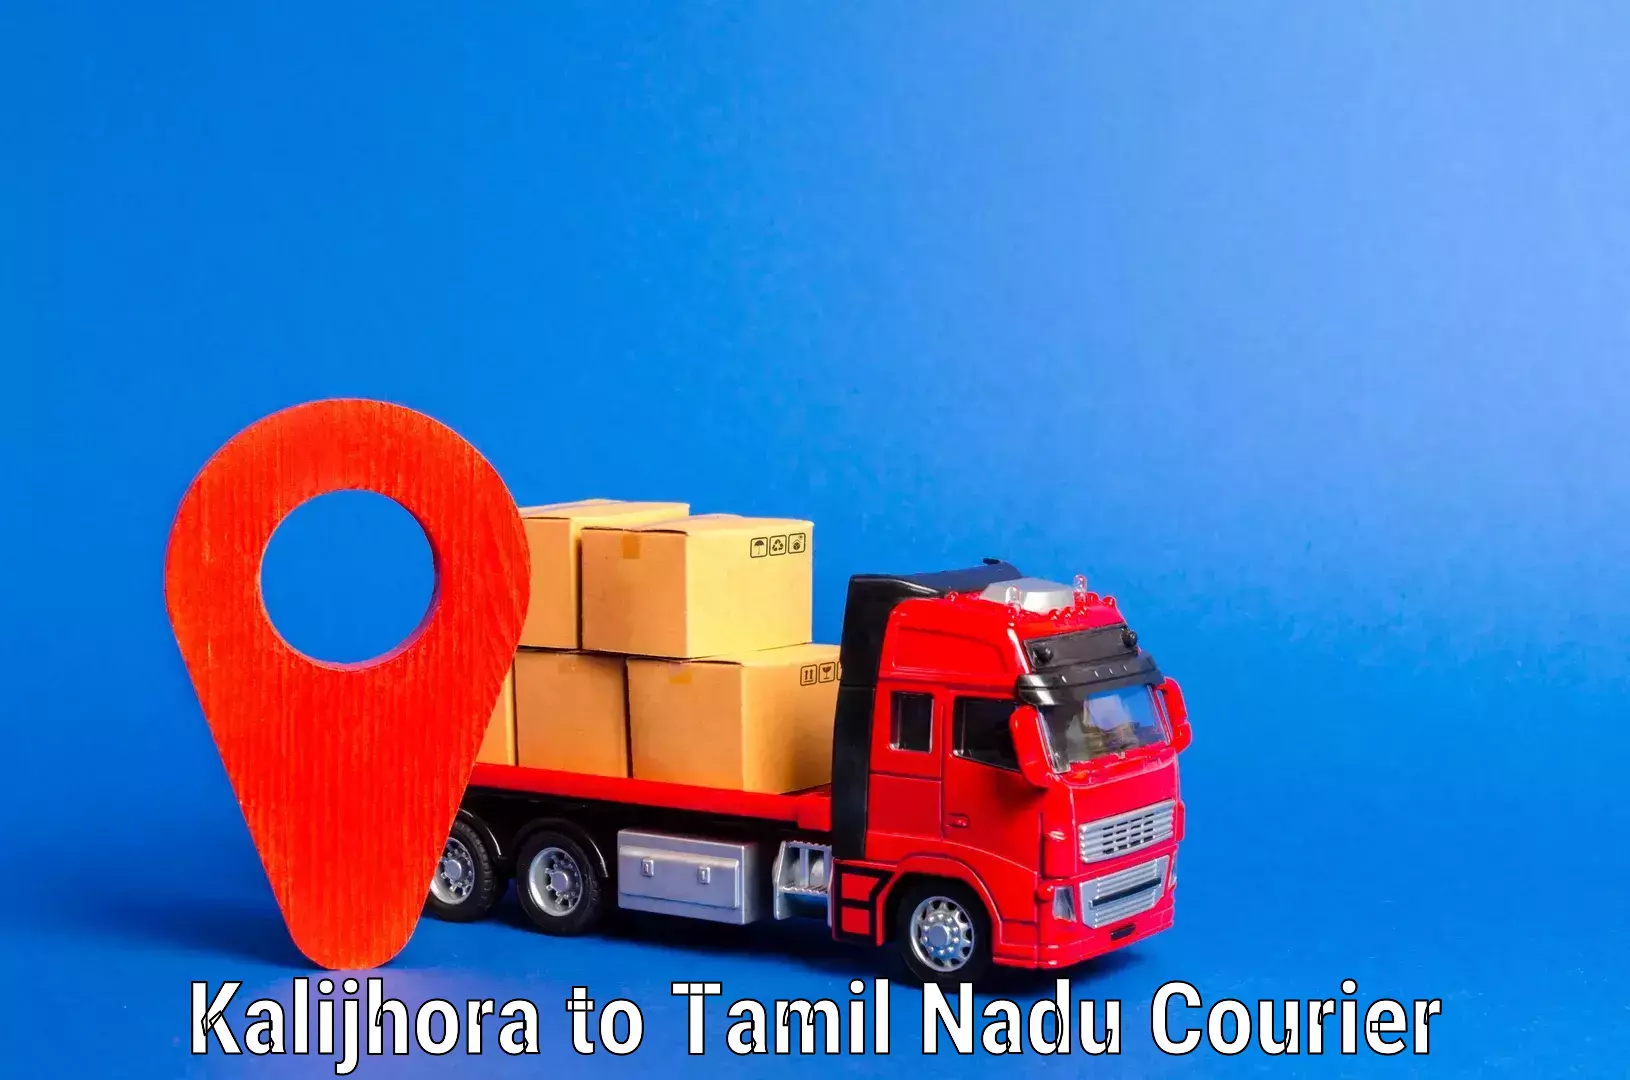 Stress-free moving in Kalijhora to Tamil Nadu